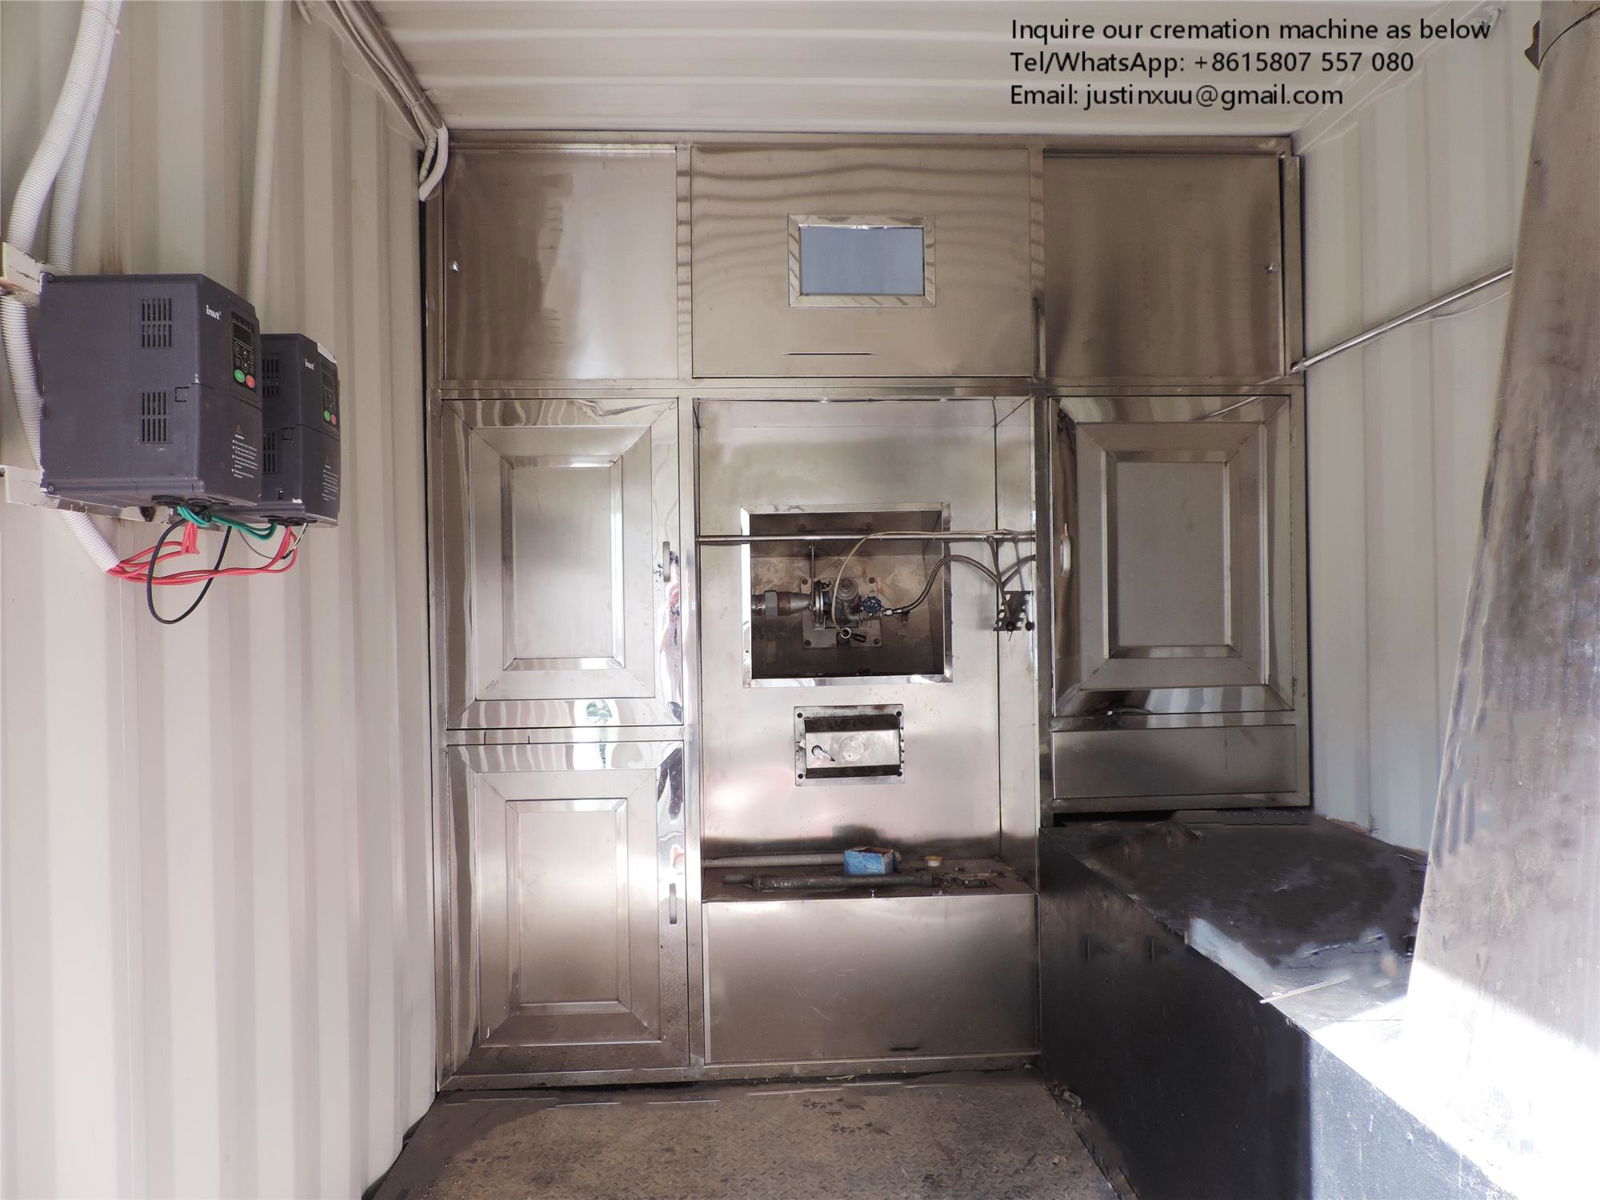  Mobile Crematorium Machine designed for South Africa market  4